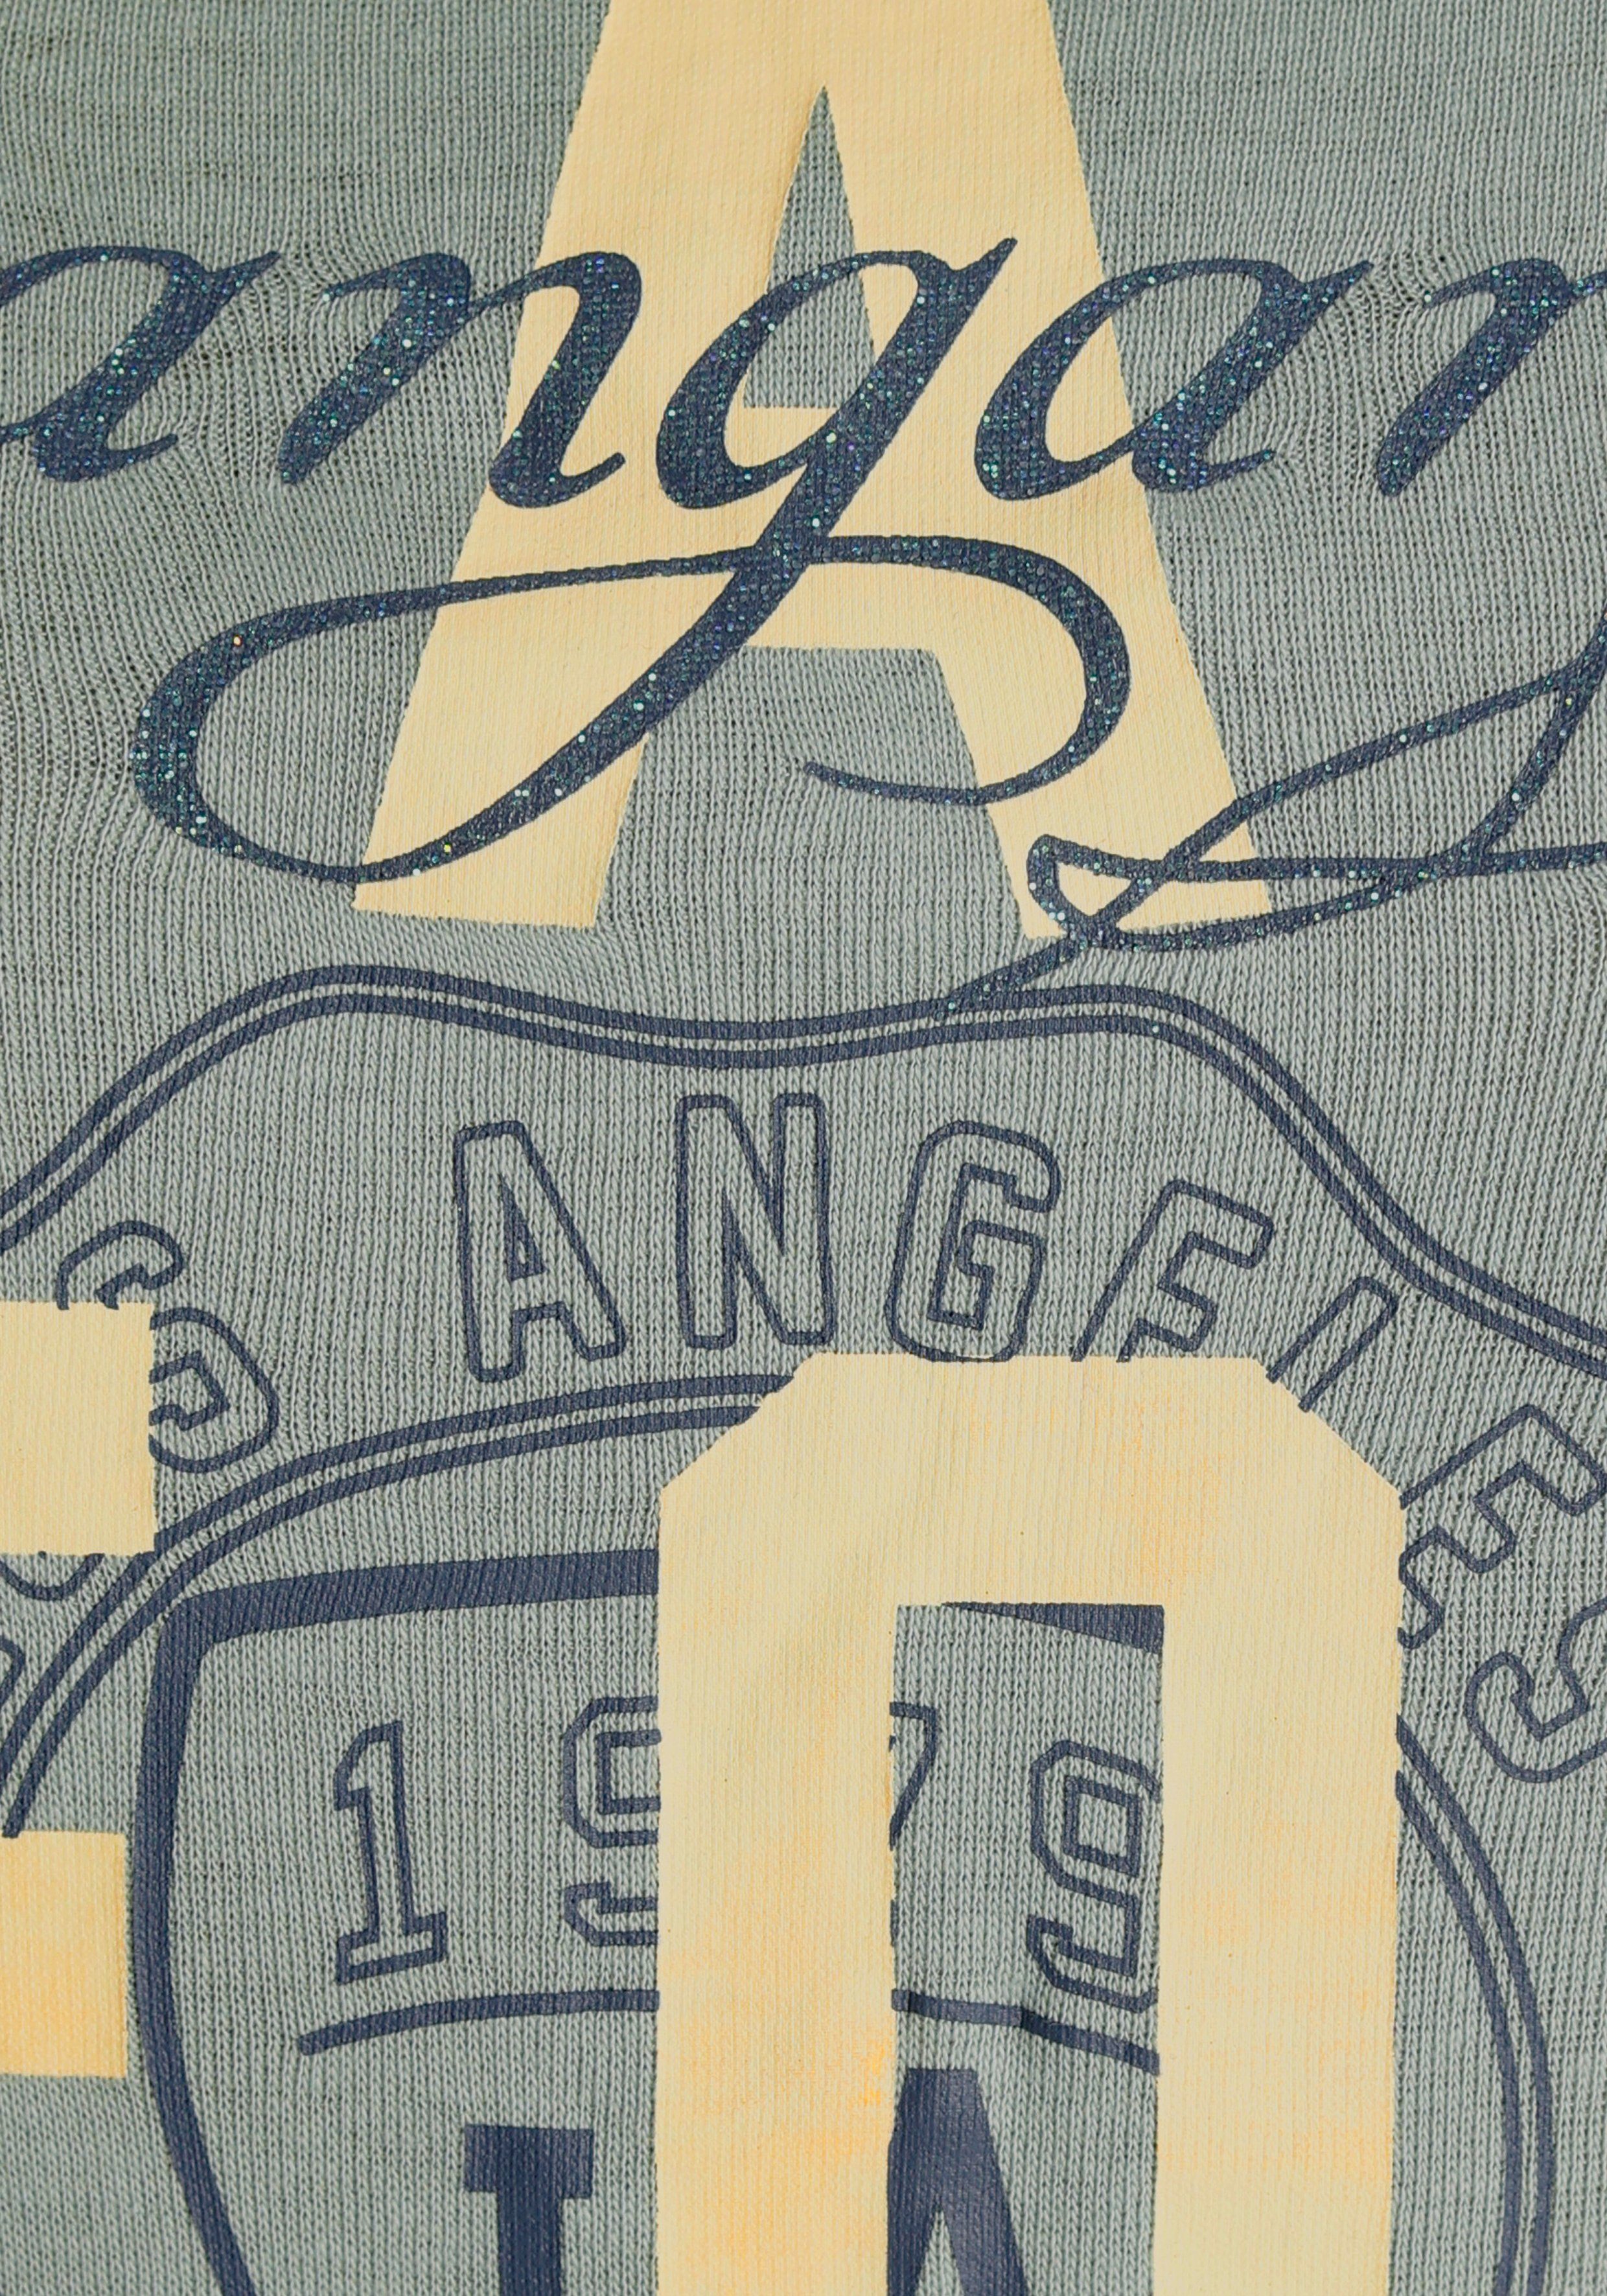 KangaROOS Print-Shirt NEUE im Logodruck khakigrau - mit KOLLEKTION California-Style